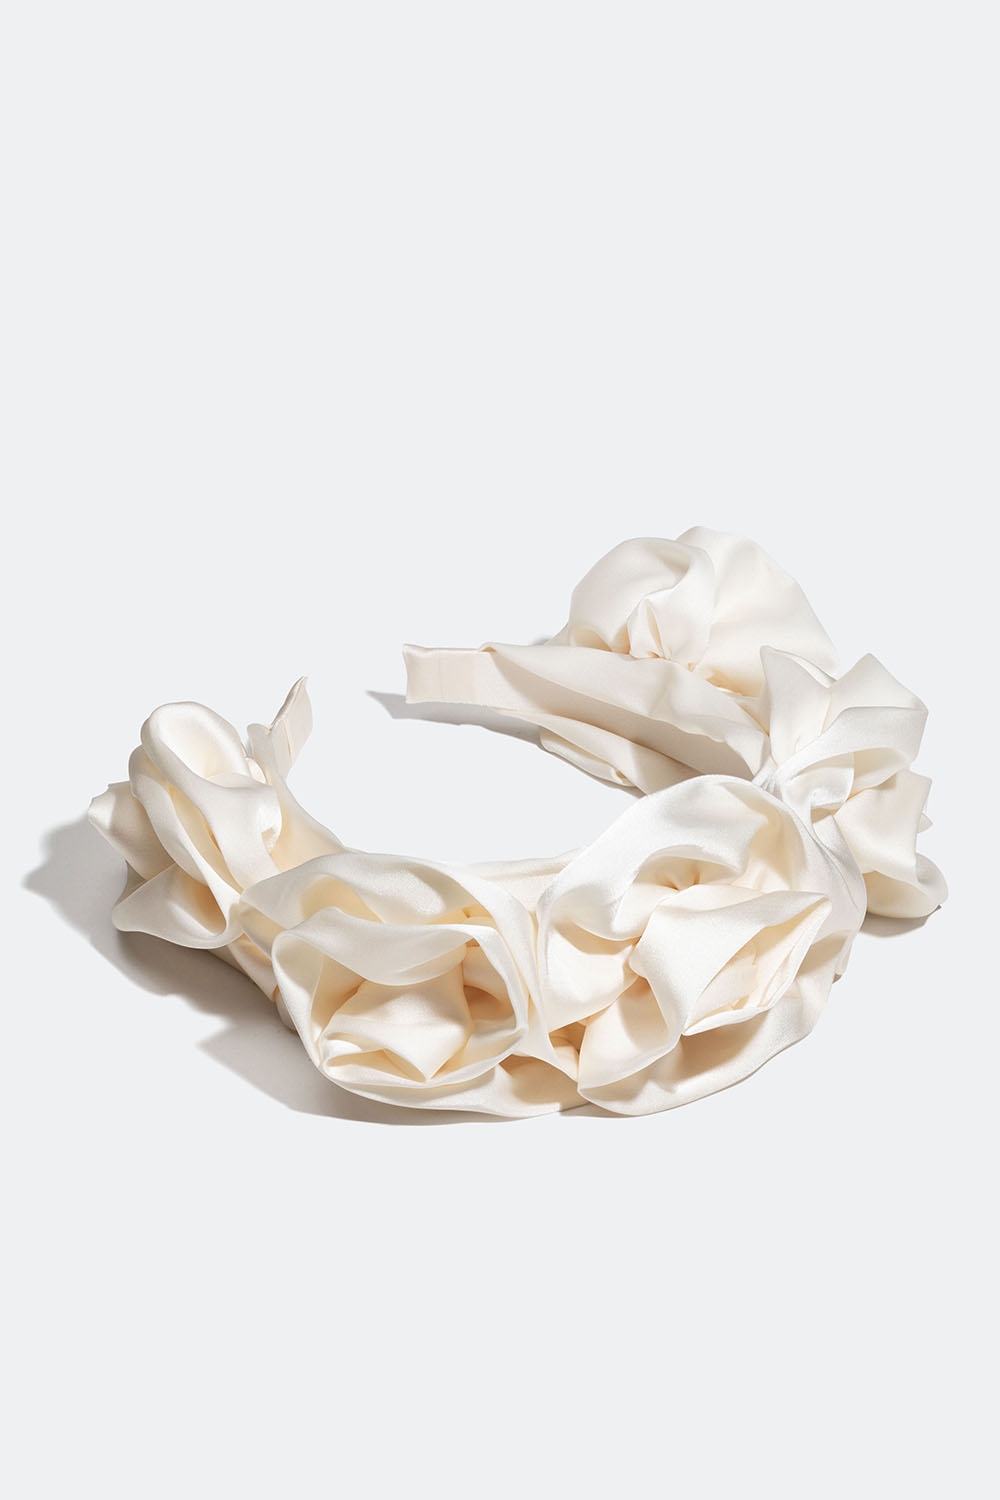 Valkoinen hiuspanta silkkijäljitelmää ja jossa kukkia ryhmässä Hiustuotteet / Hiuspannat / Leveät @ Glitter (336000663100)